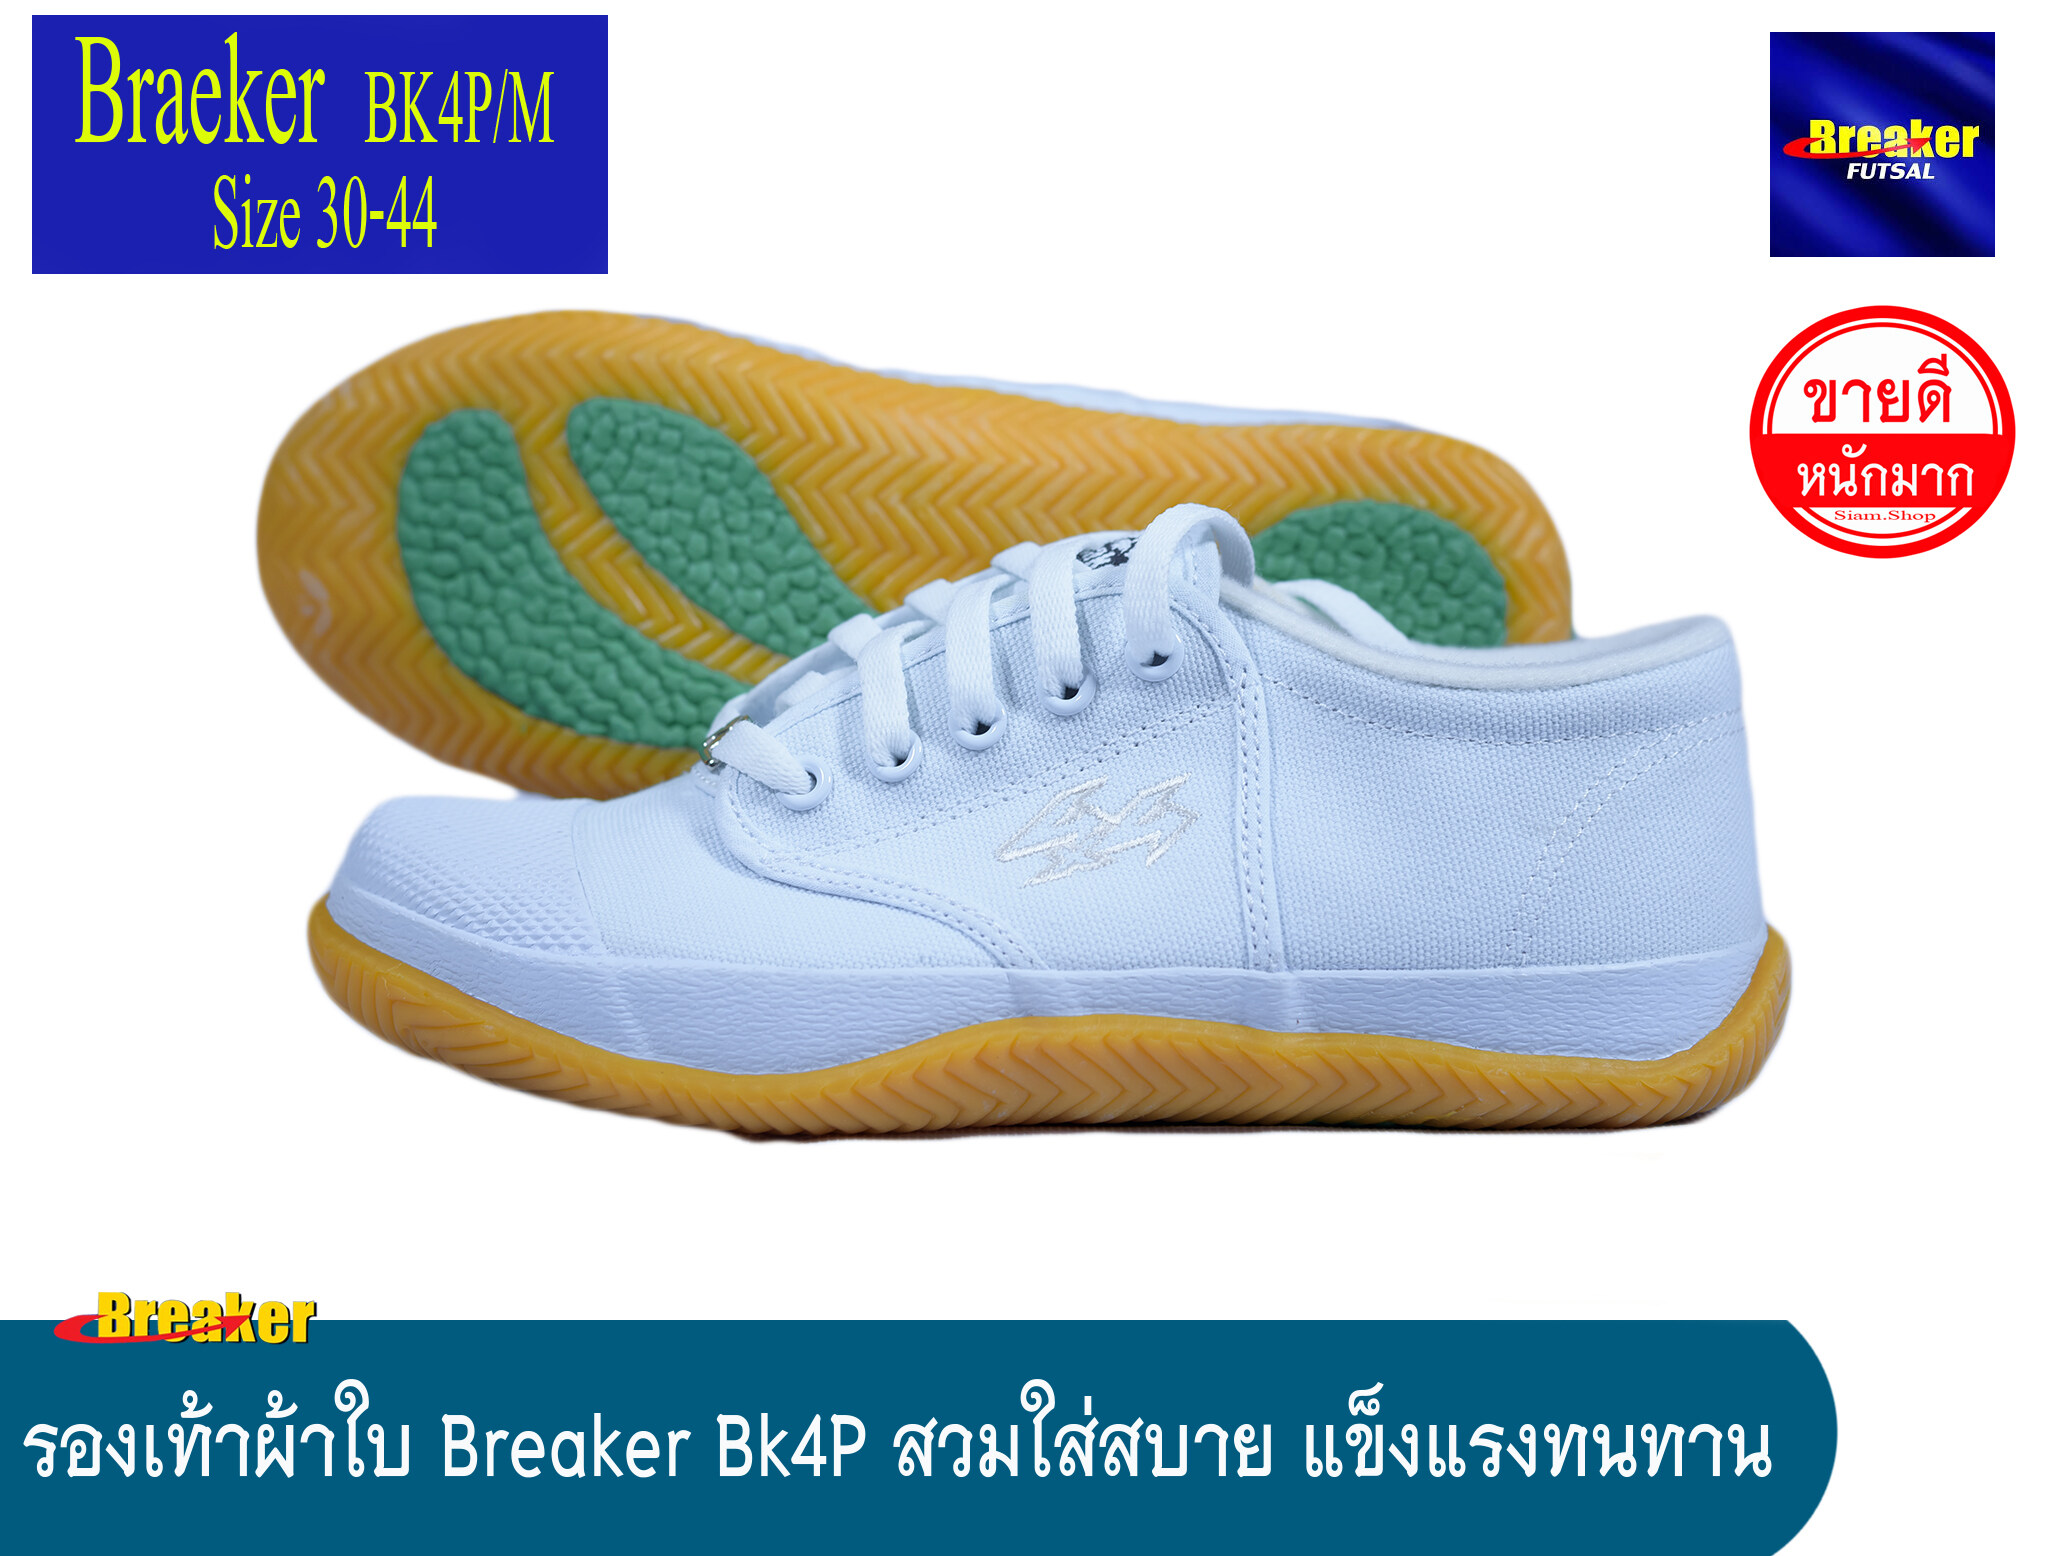 รองเท้าใบเบรคเกอร์ (สีขาว) Breaker futsal รองเท้าผ้าใบ รองเท้านักเรียน รองเท้าผ้าใบนักเรียน รองเท้าพละ รองเท้าผ้าใบสีขาว รุ่น BK4P สีขาว